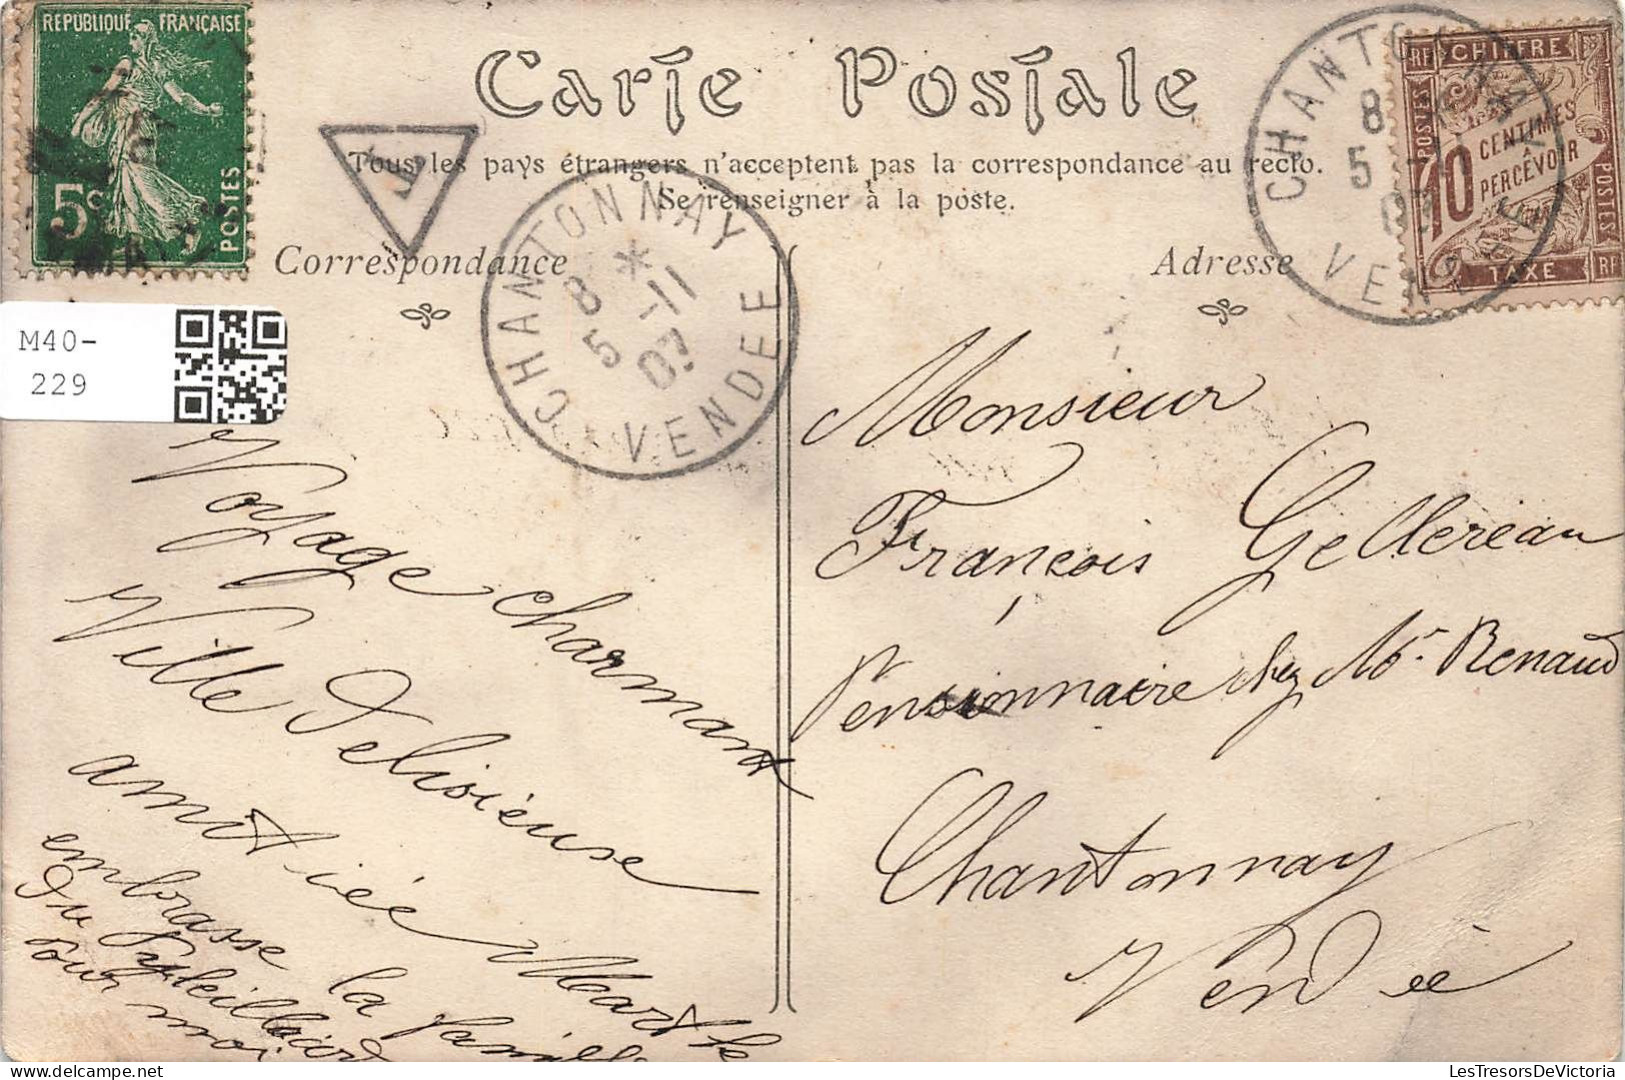 FRANCE - Angers - Le Jardin Du Mail - Fontaine - Animé - Carte Postale Ancienne - Angers